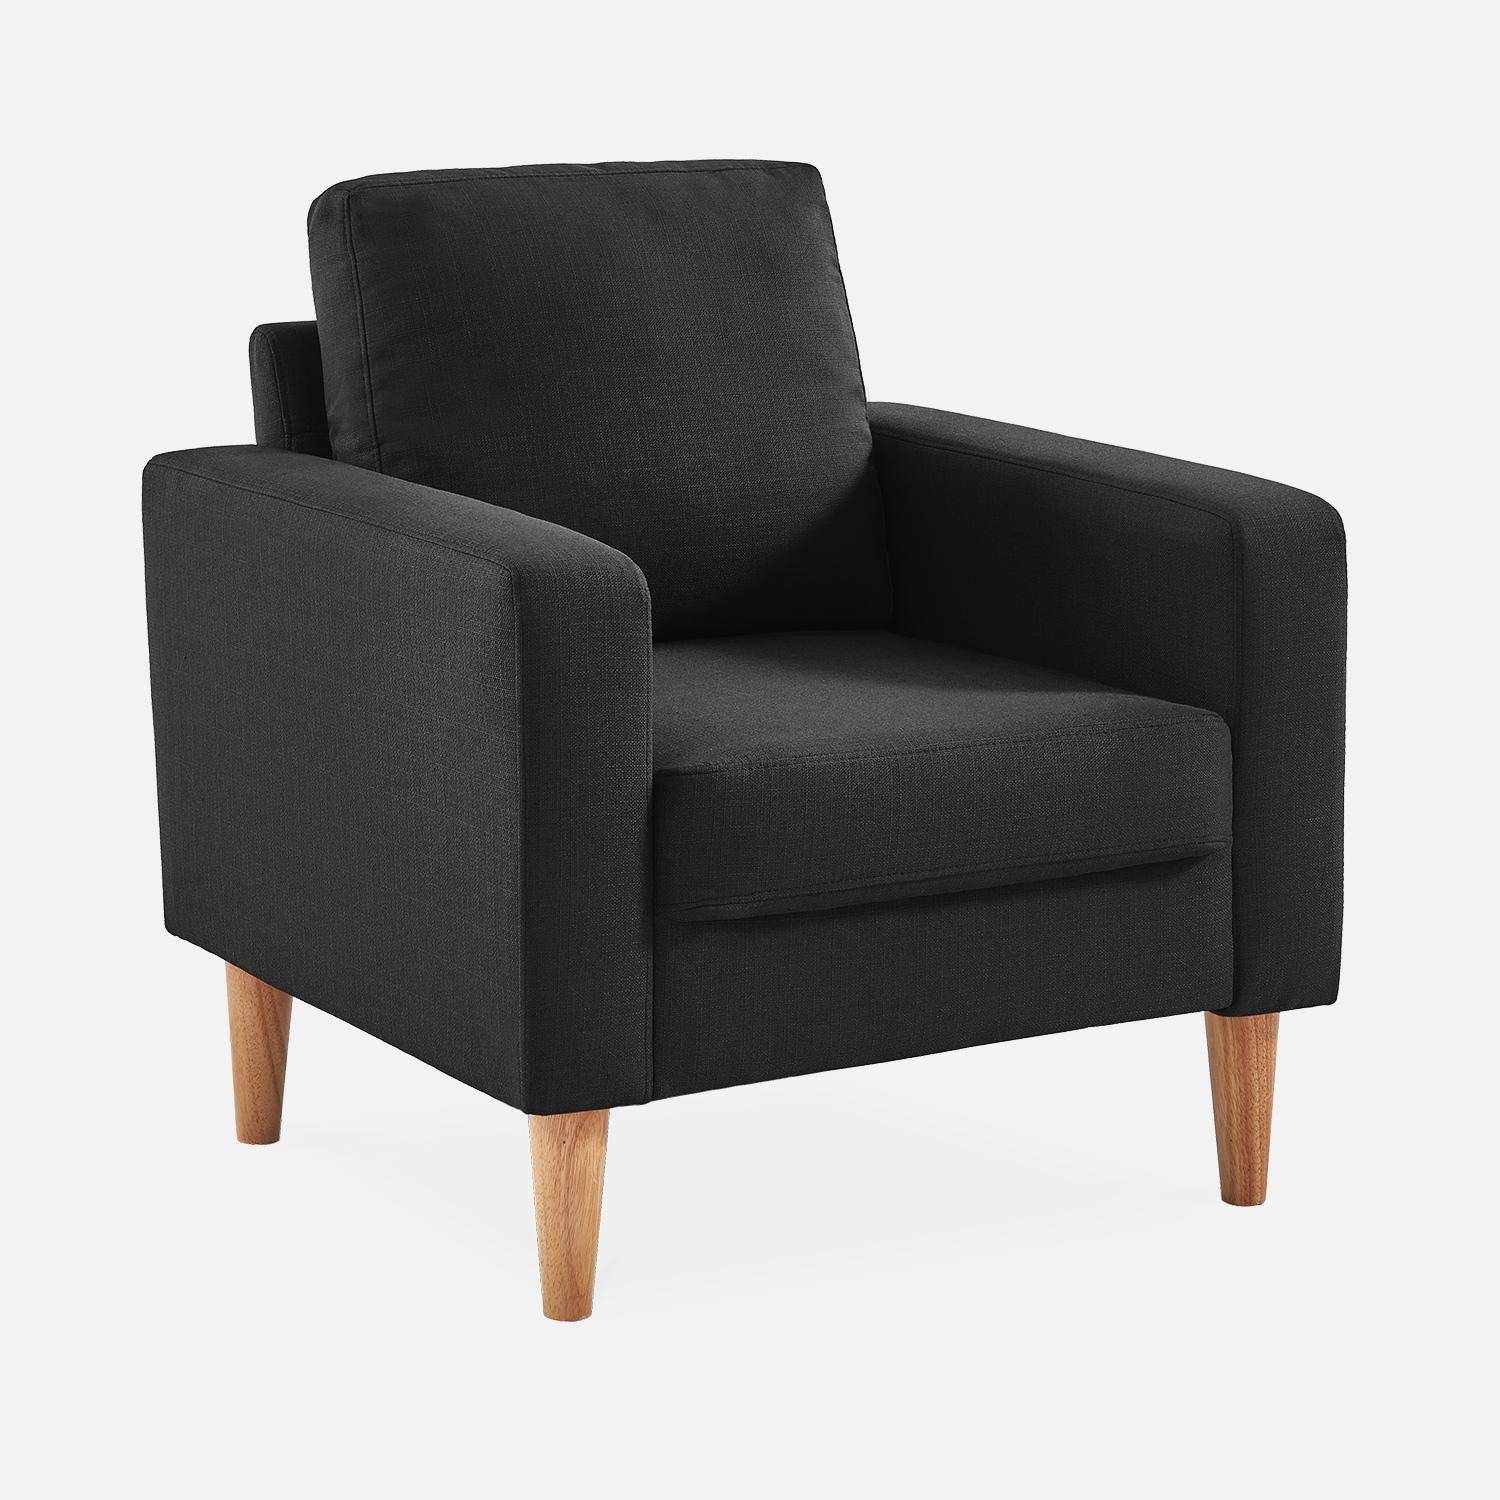 Sillón de tela gris oscuro - Bjorn - Sillón 1 plaza fijo recto patas madera, sillón escandinavo   Photo2